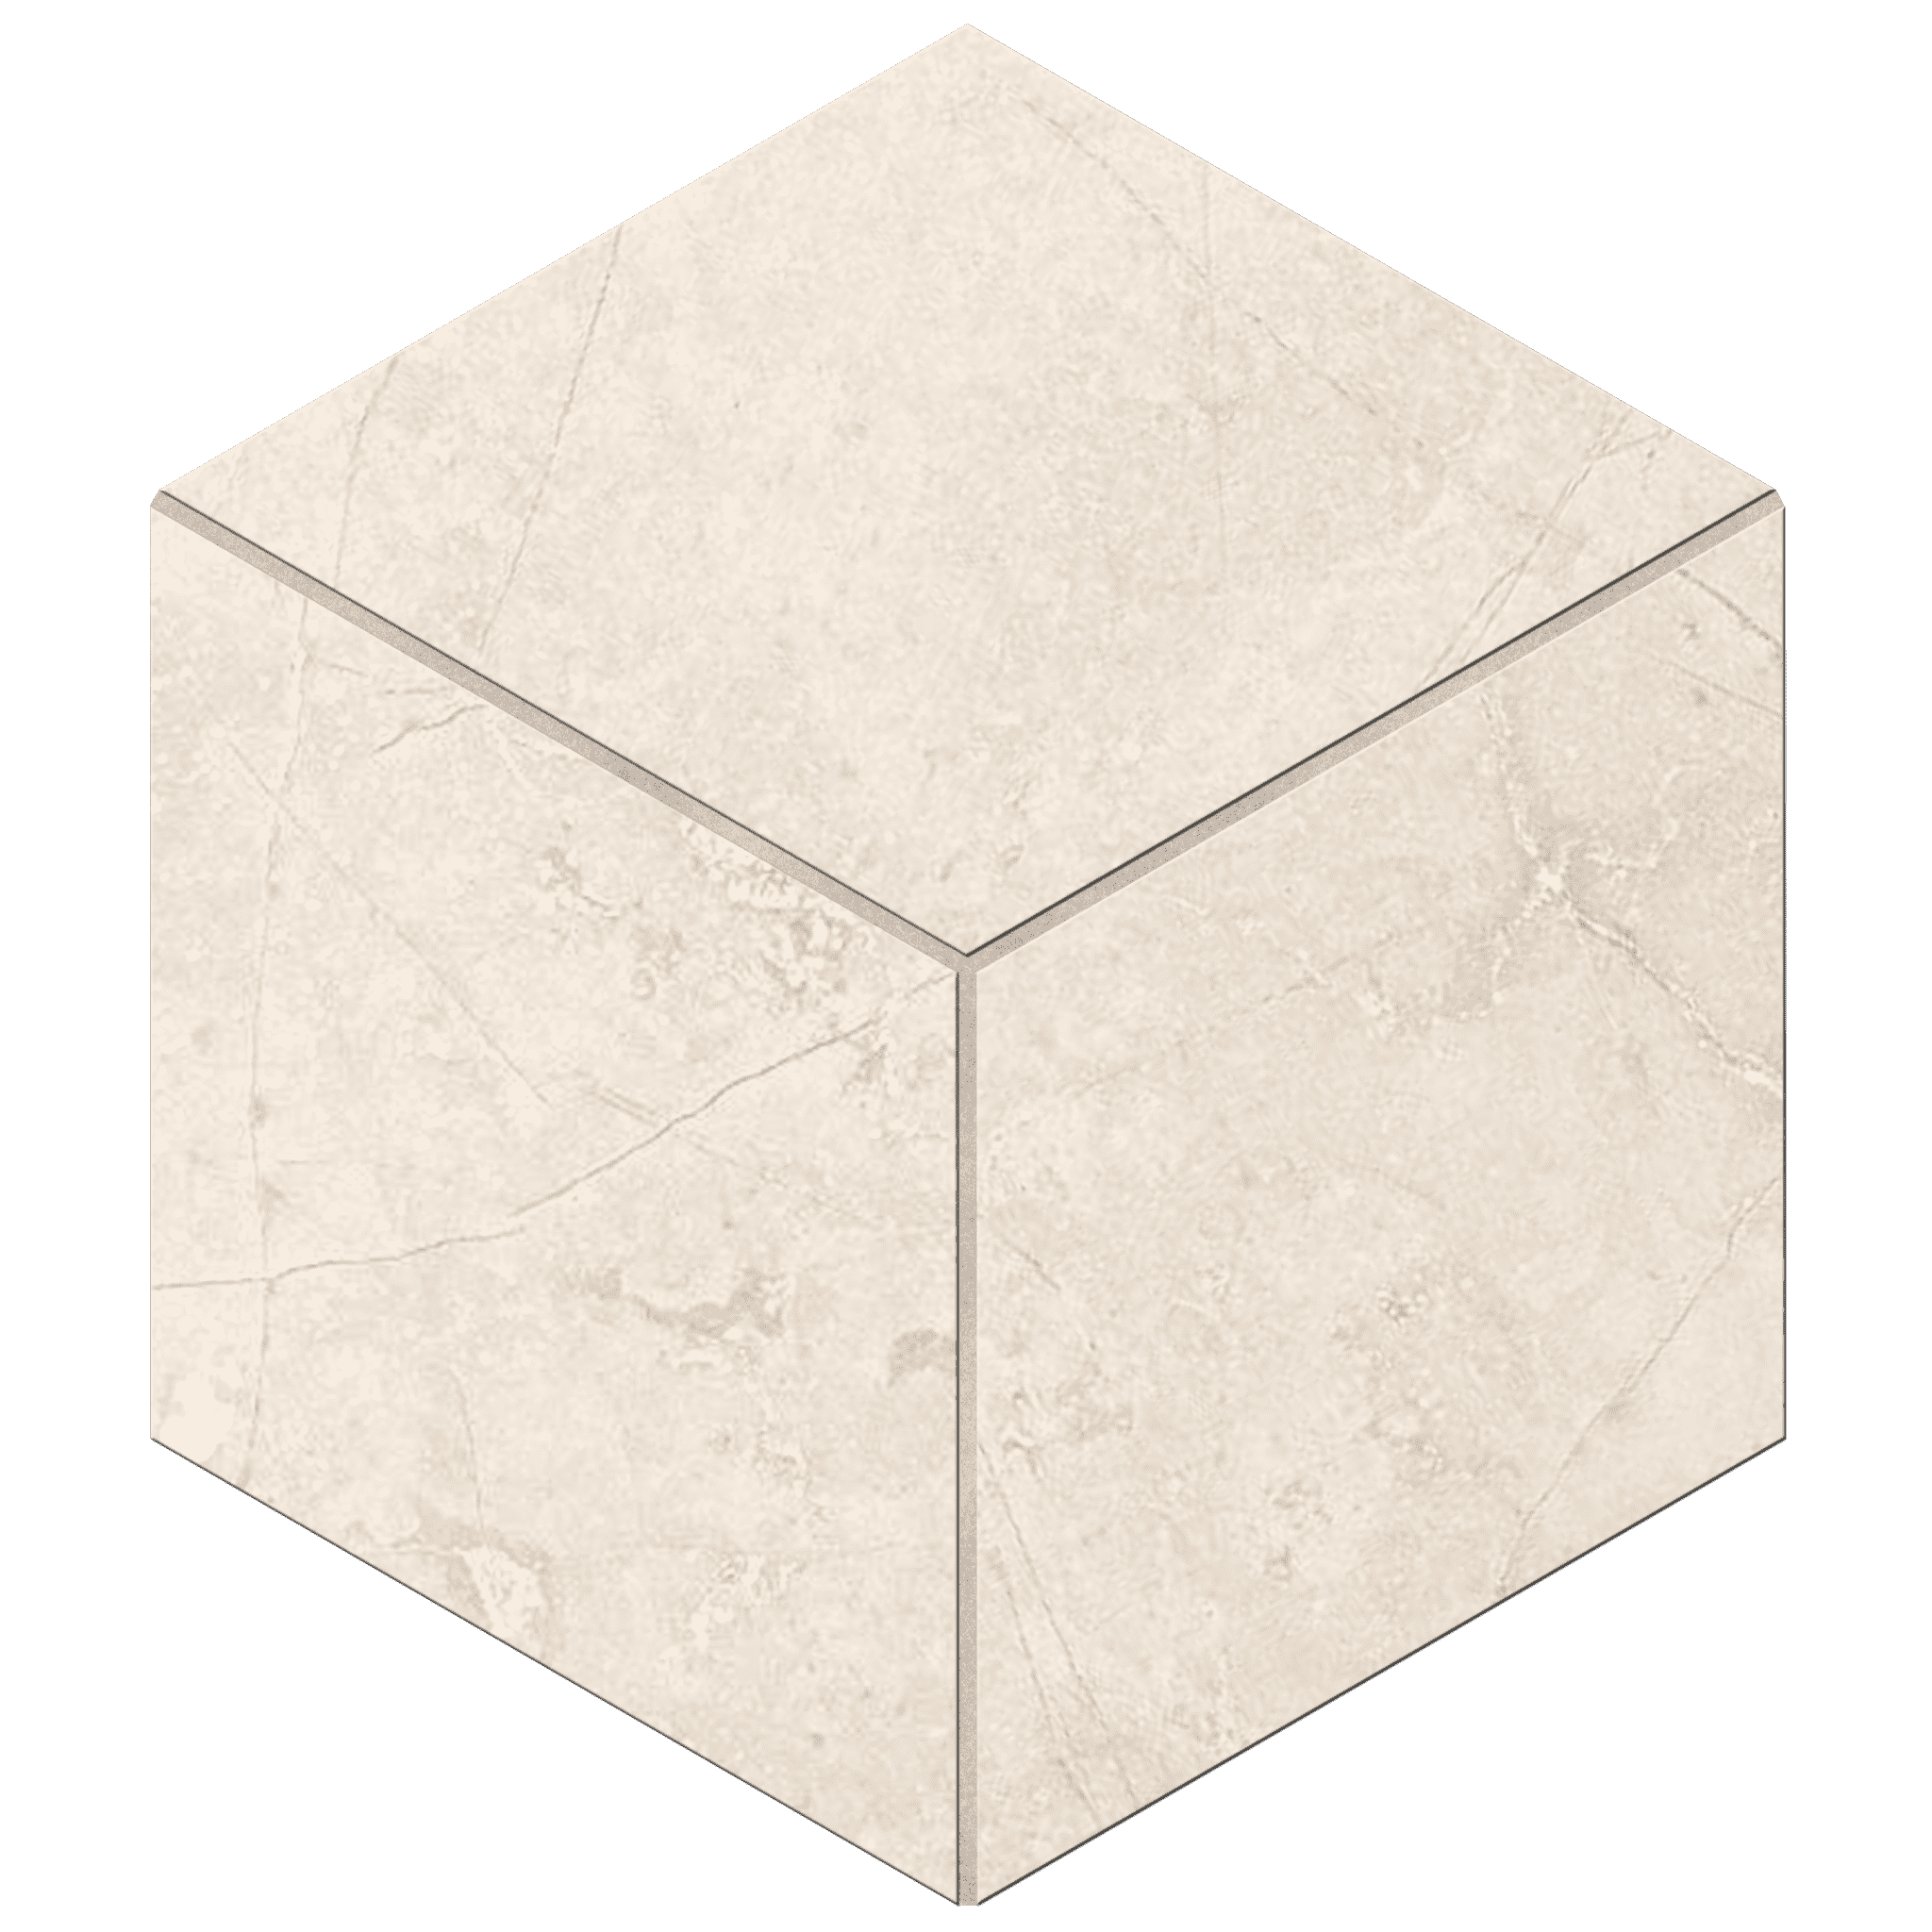 Мозаика Ametis Marmulla Light Beige MA02 Cube Полир. 29x25 мозаика ametis marmulla ivory ma00 5x5 непол полир 30x30